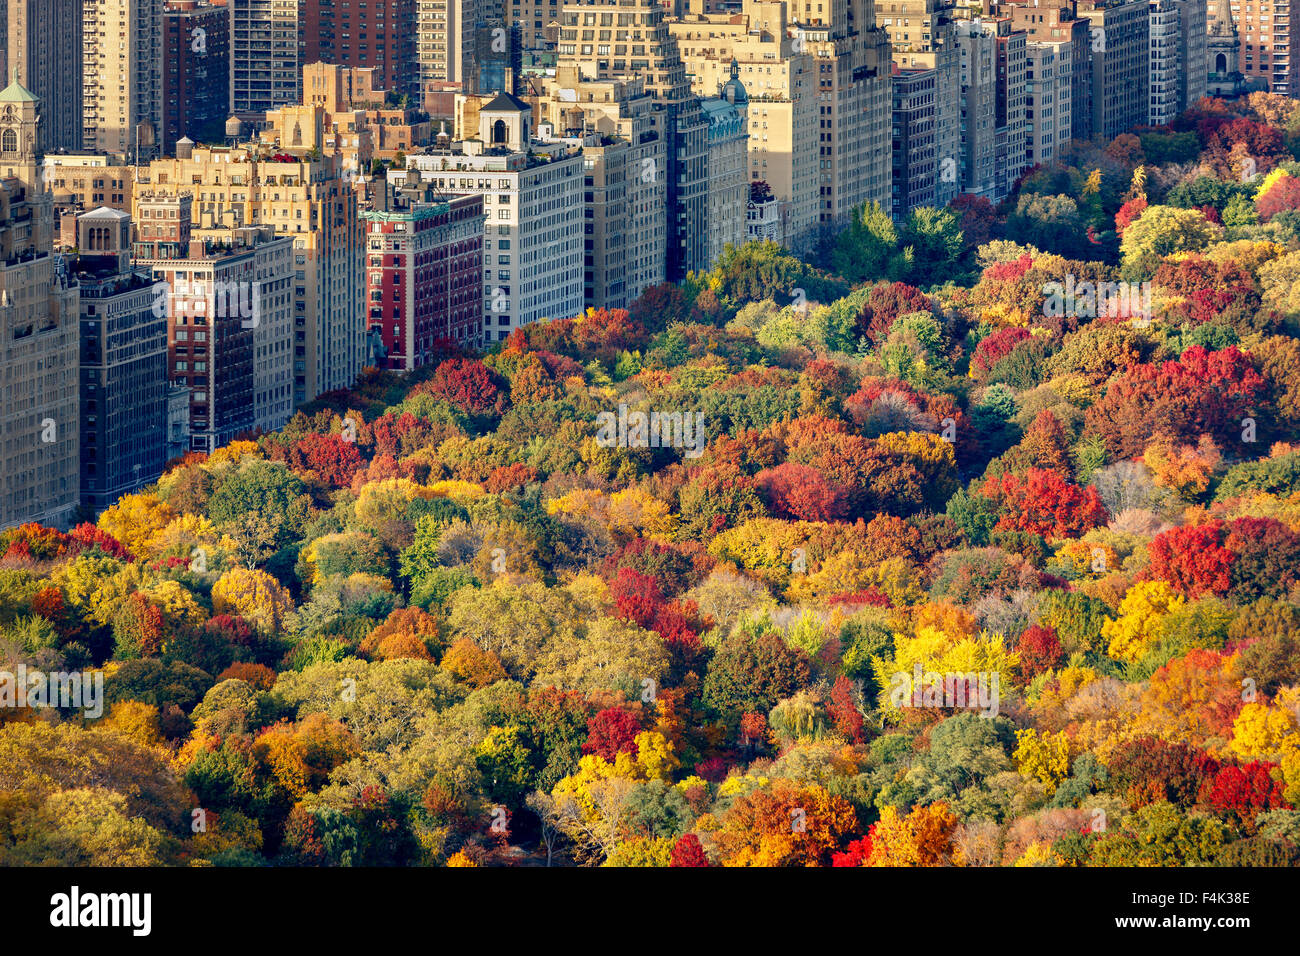 Vista aérea de brillantes colores de otoño de Central Park West follaje en las últimas horas de la tarde. El Upper West Side, Manhattan, Ciudad de Nueva York Foto de stock